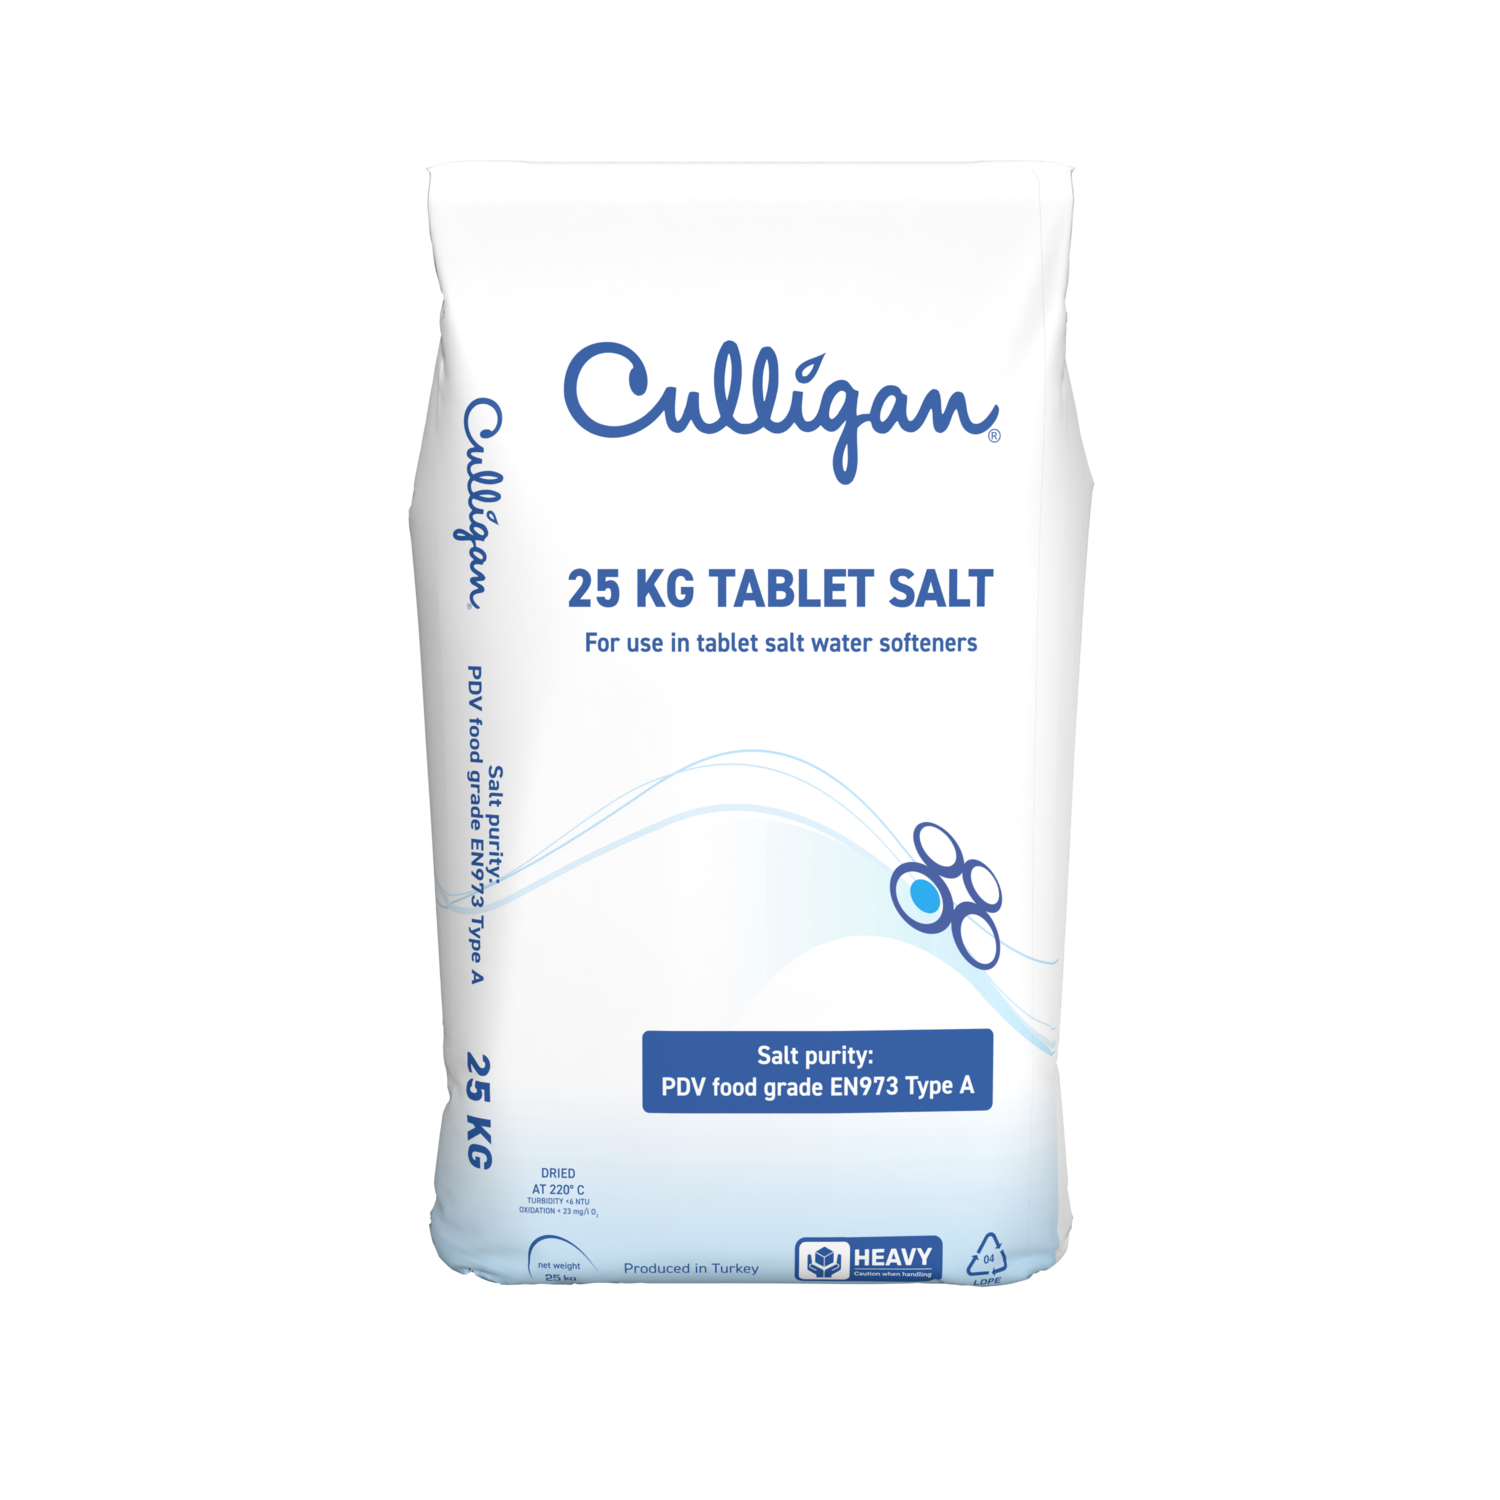 Tablet Salt 25kg - 5 packs delivered